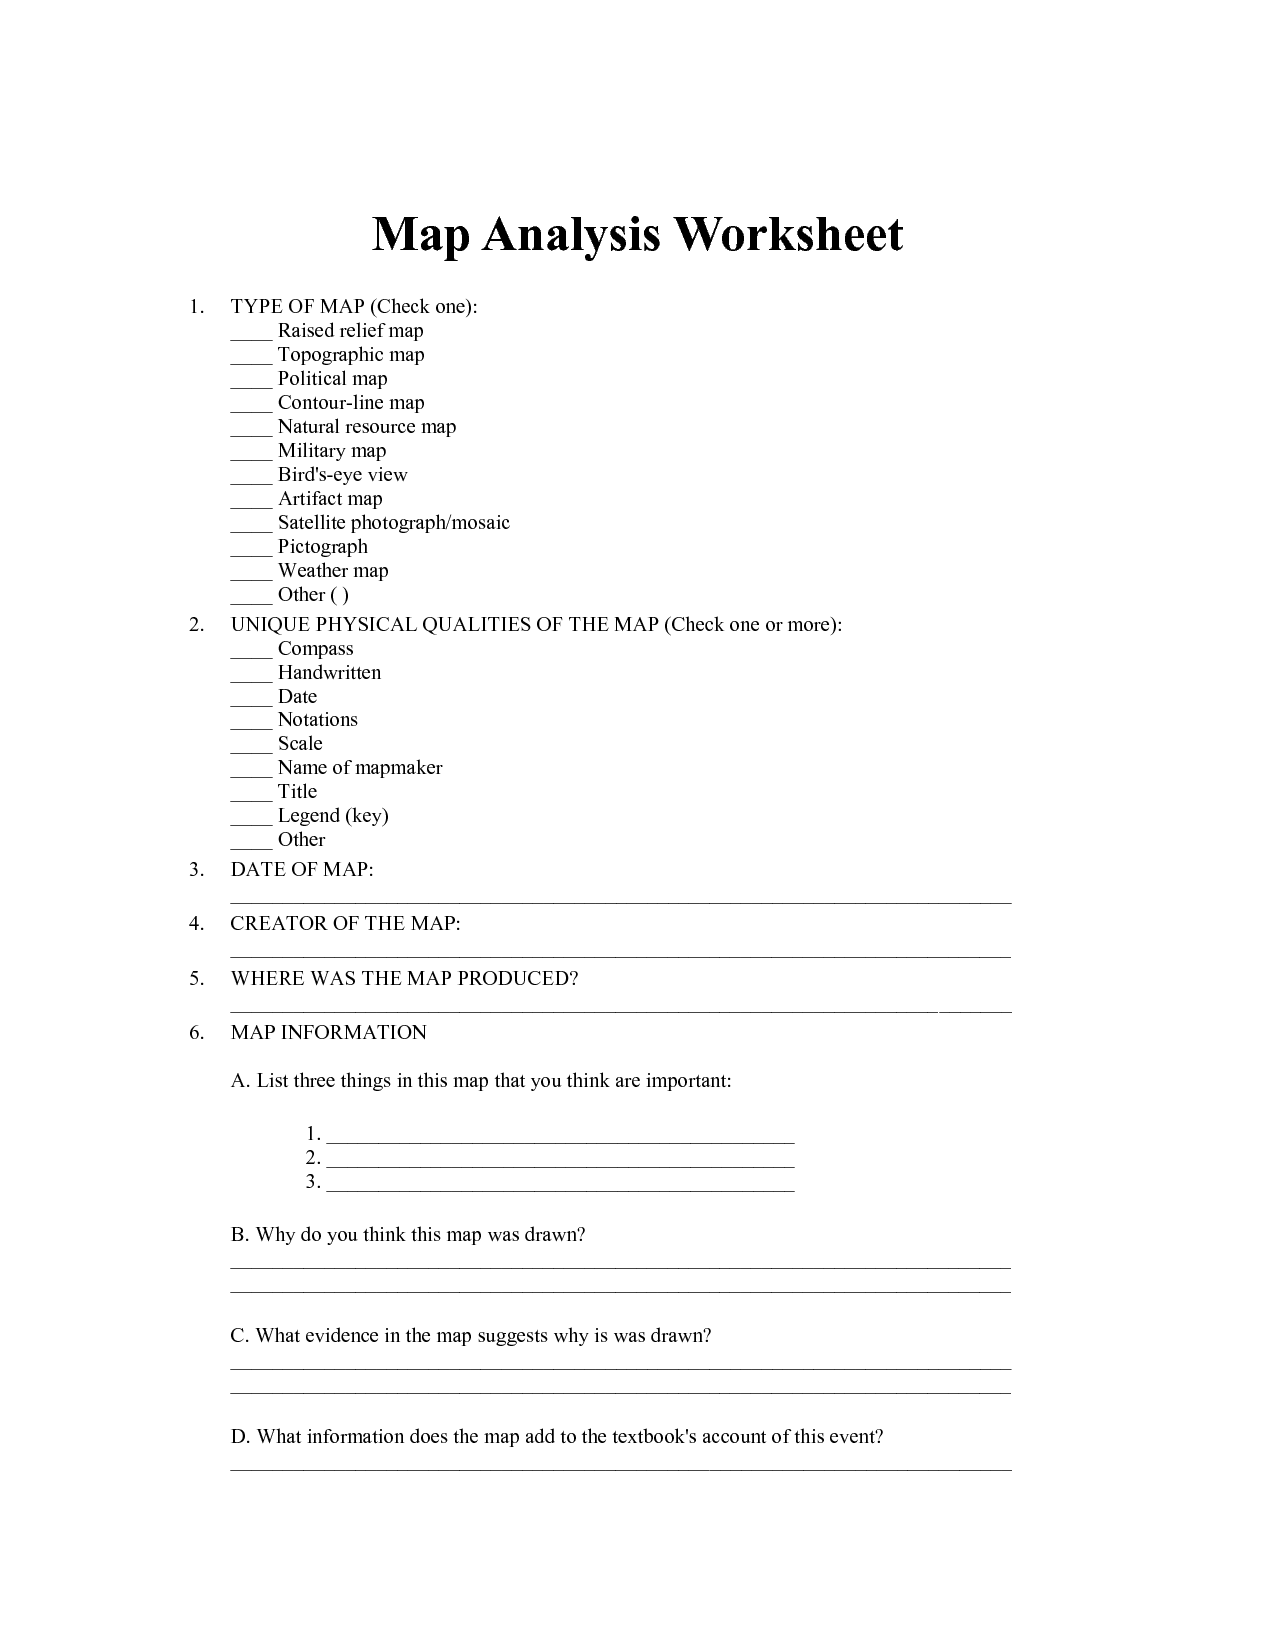 Map Analysis Worksheet Image